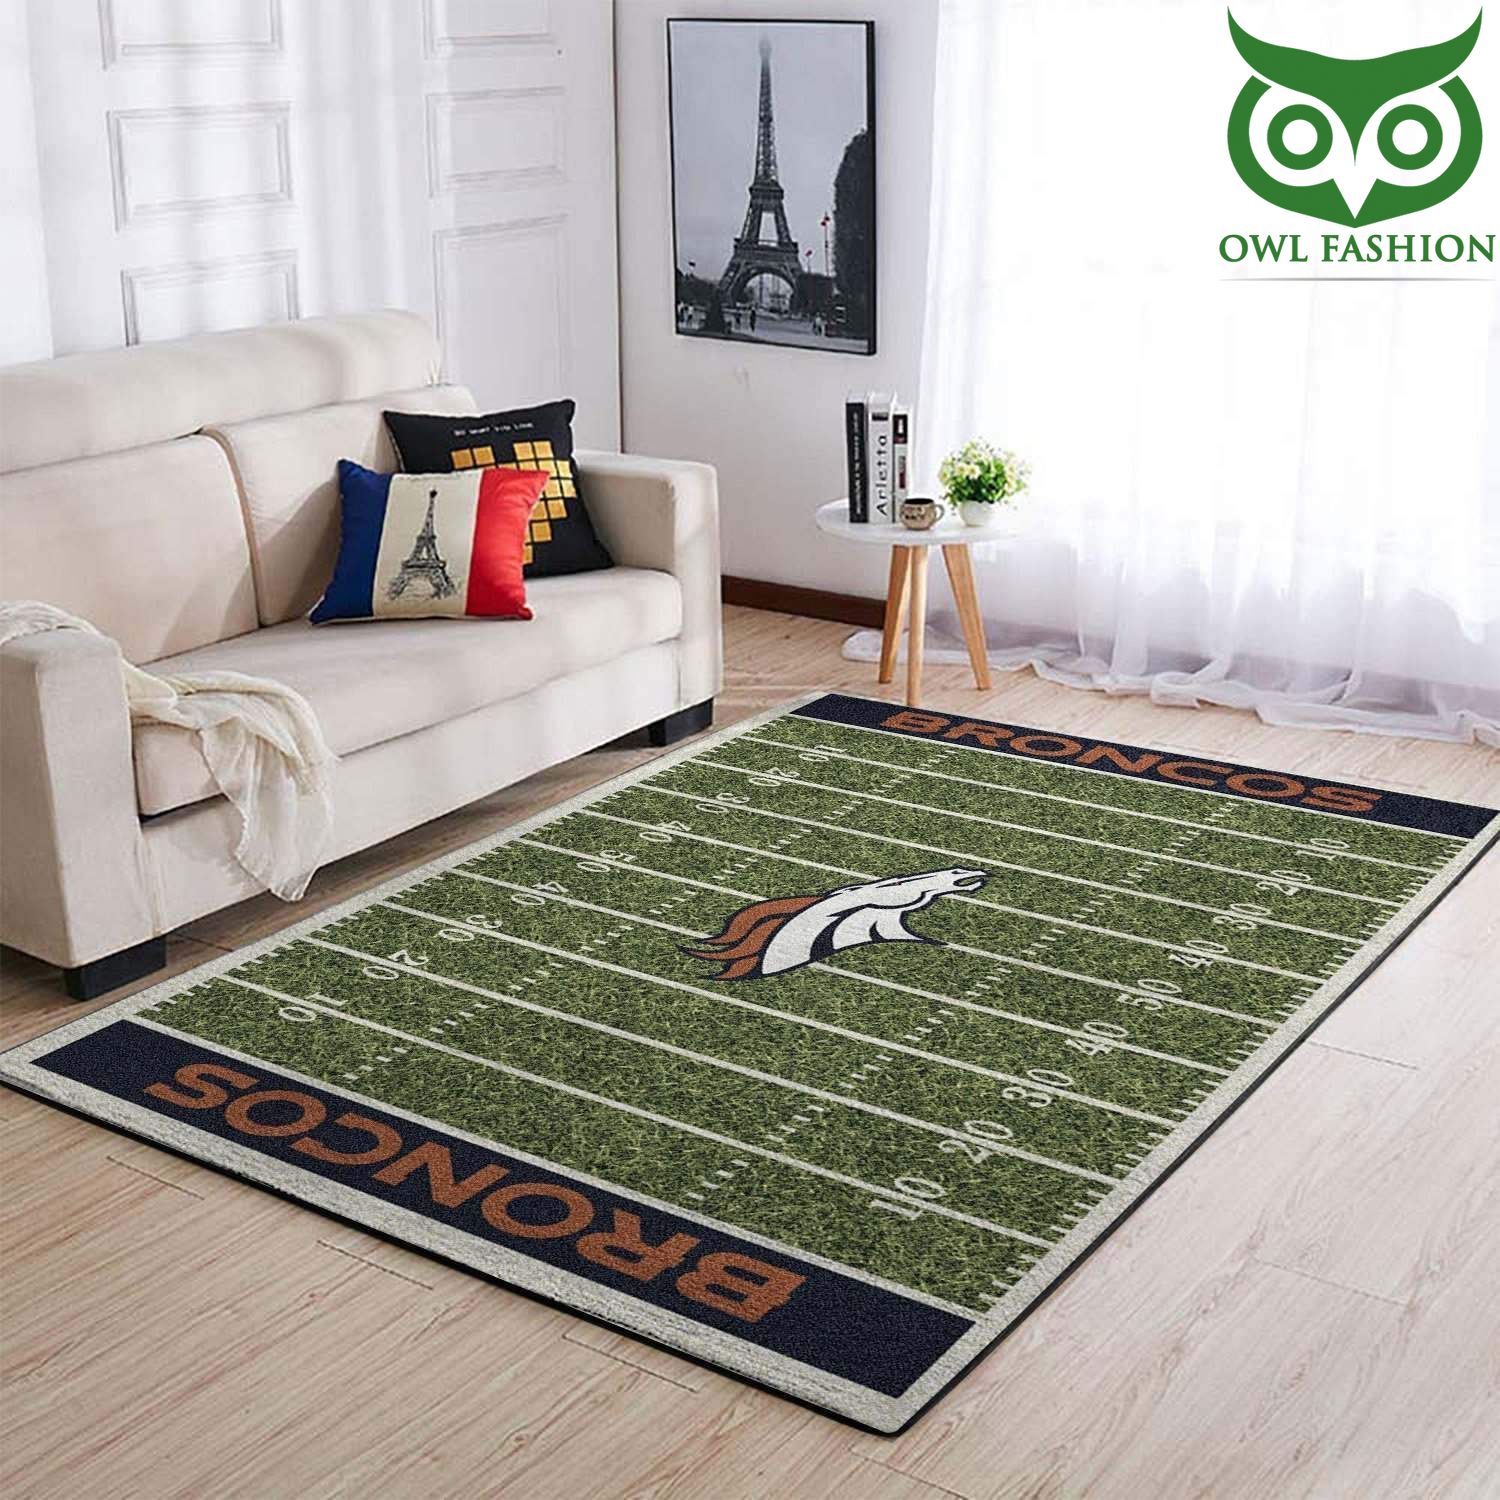 Nfl Football Team Denver Broncos Area carpet rug Home and floor Decor